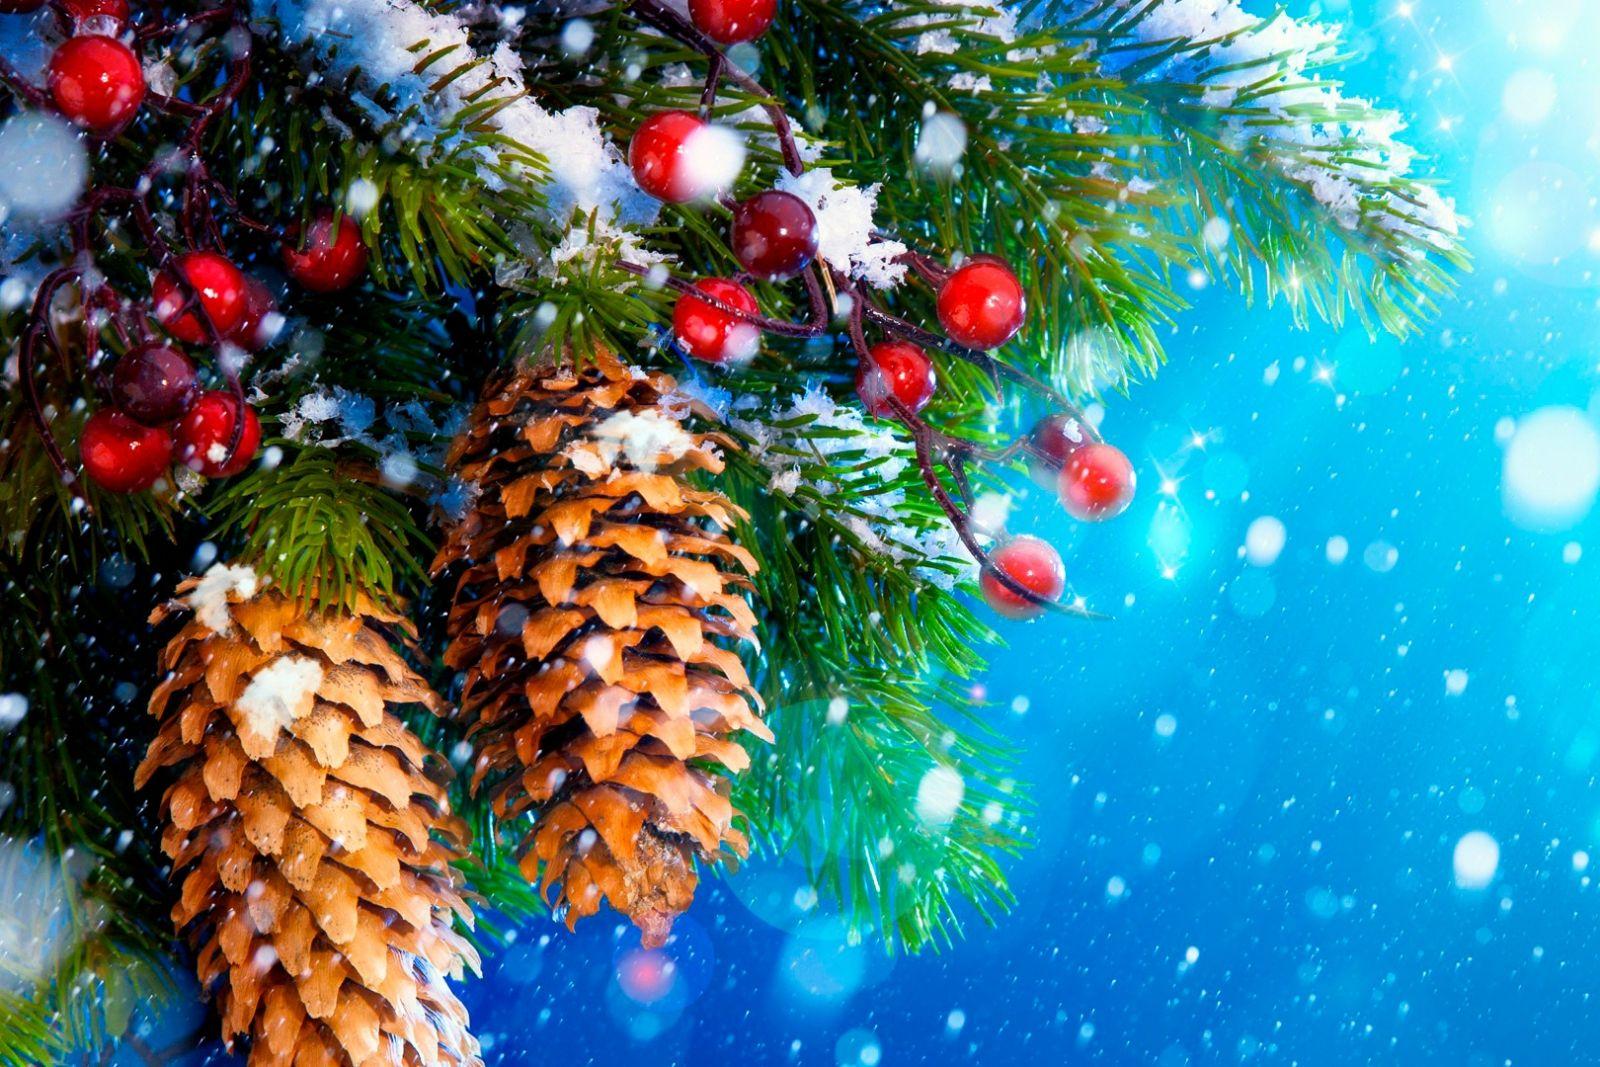 Обои на рабочий стол - зима, Новый Год 2021 с символом года |  Рождественские каникулы, Рождественские идеи, Зимние каникулы